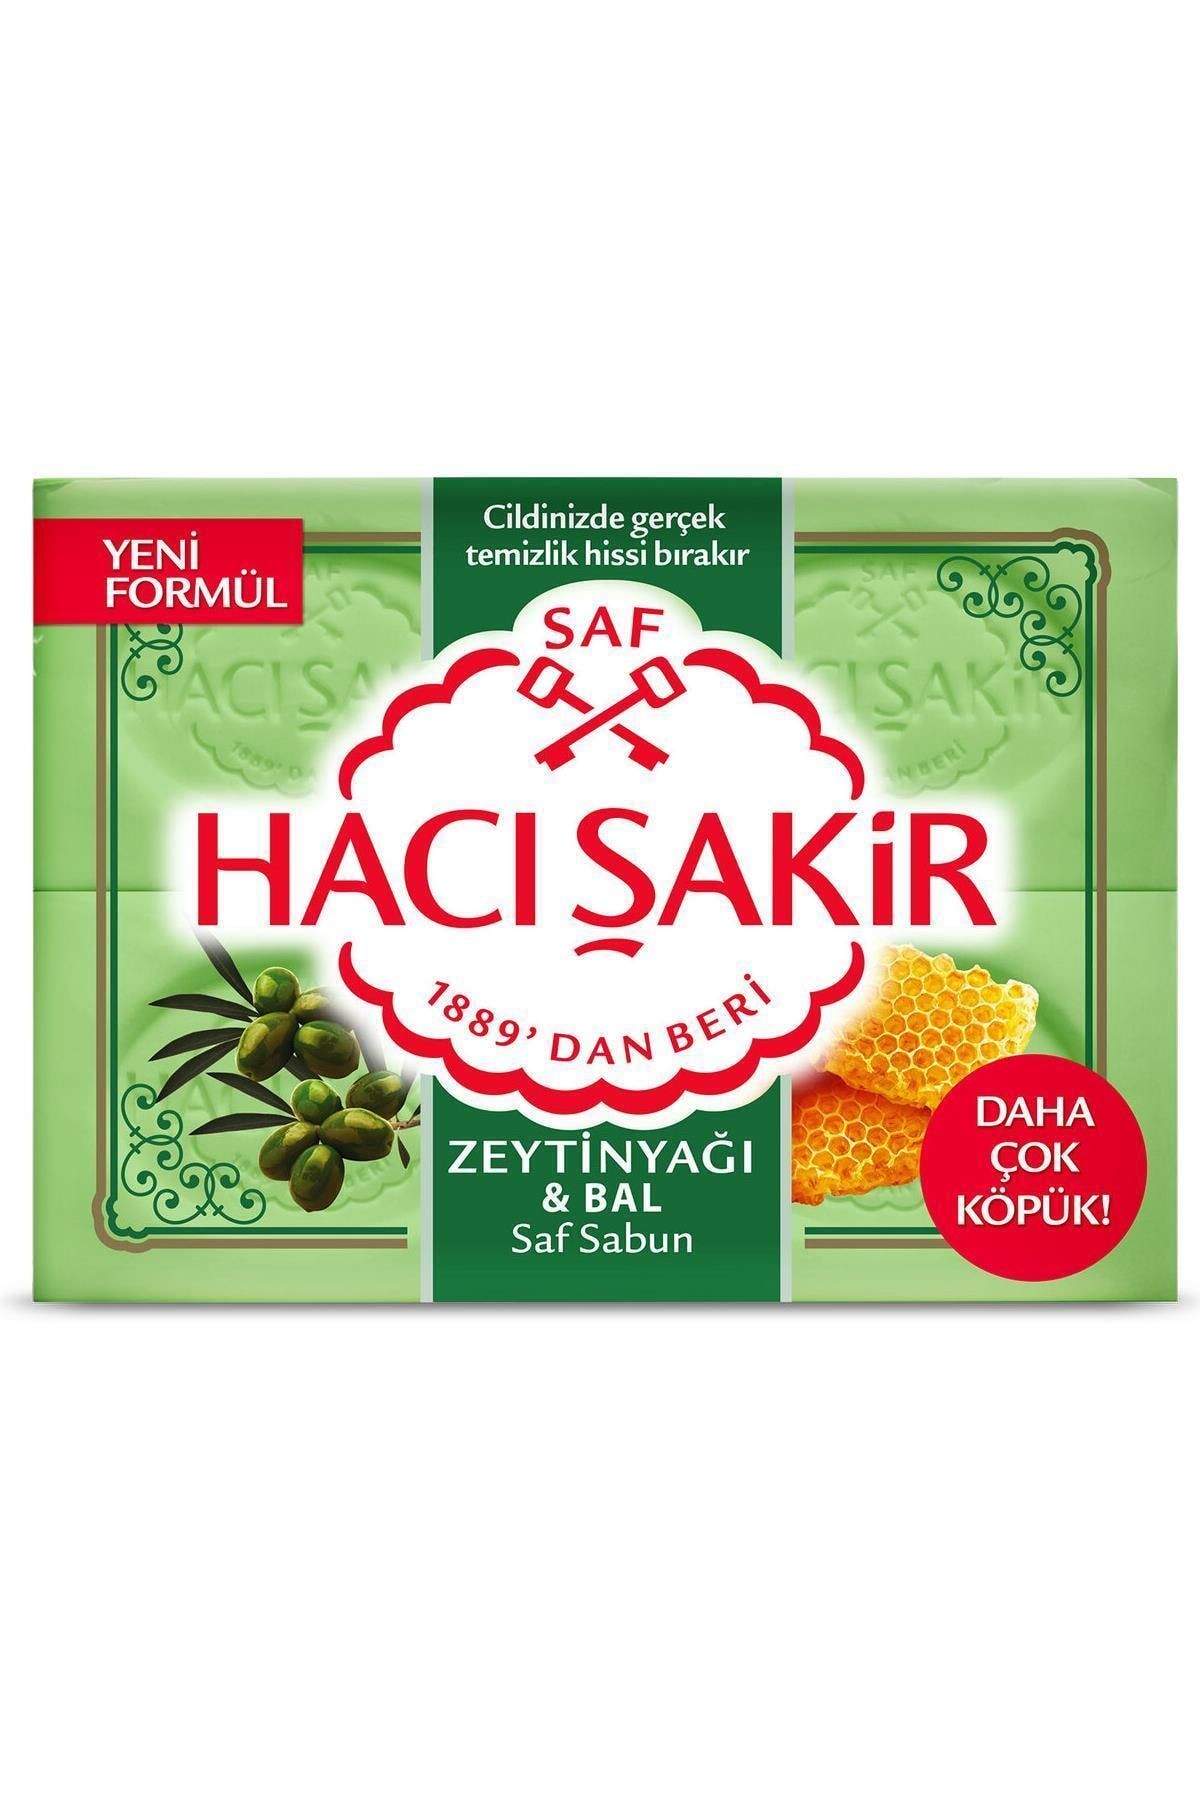 FLY BAZAAR Marka: Hacı Şakir Zeytinyağı & Bal Kalıp Sabun 4x150 G Kategori: Banyo Sabunu